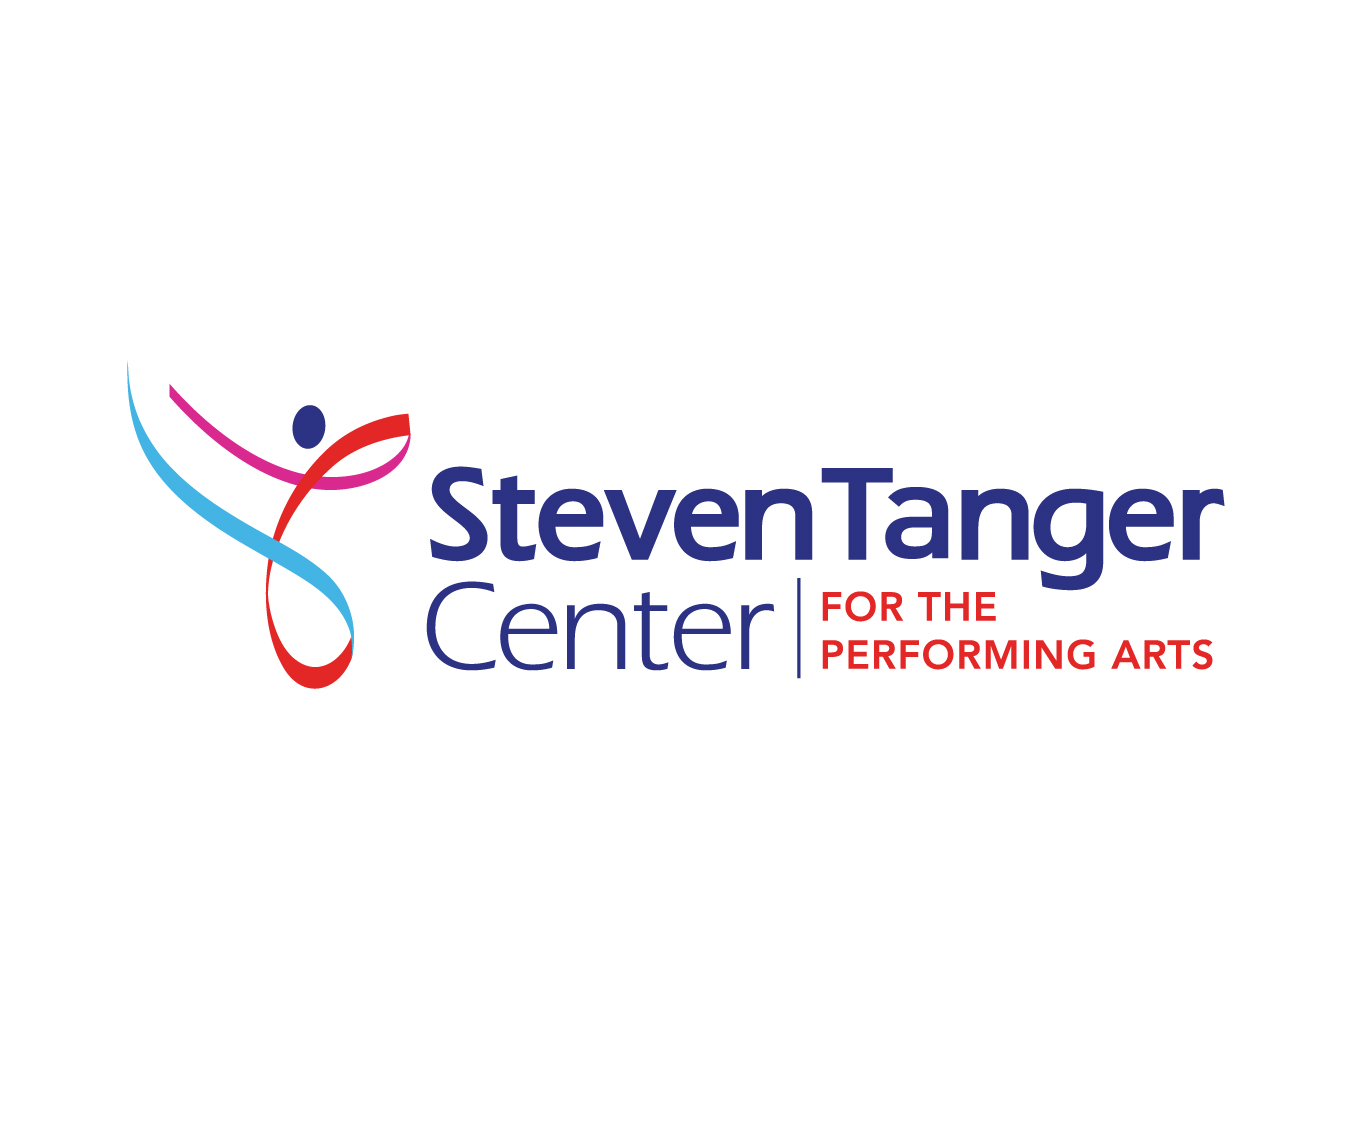 Steven Tanger Center for the Performing Arts Greensboro NC Logo Development